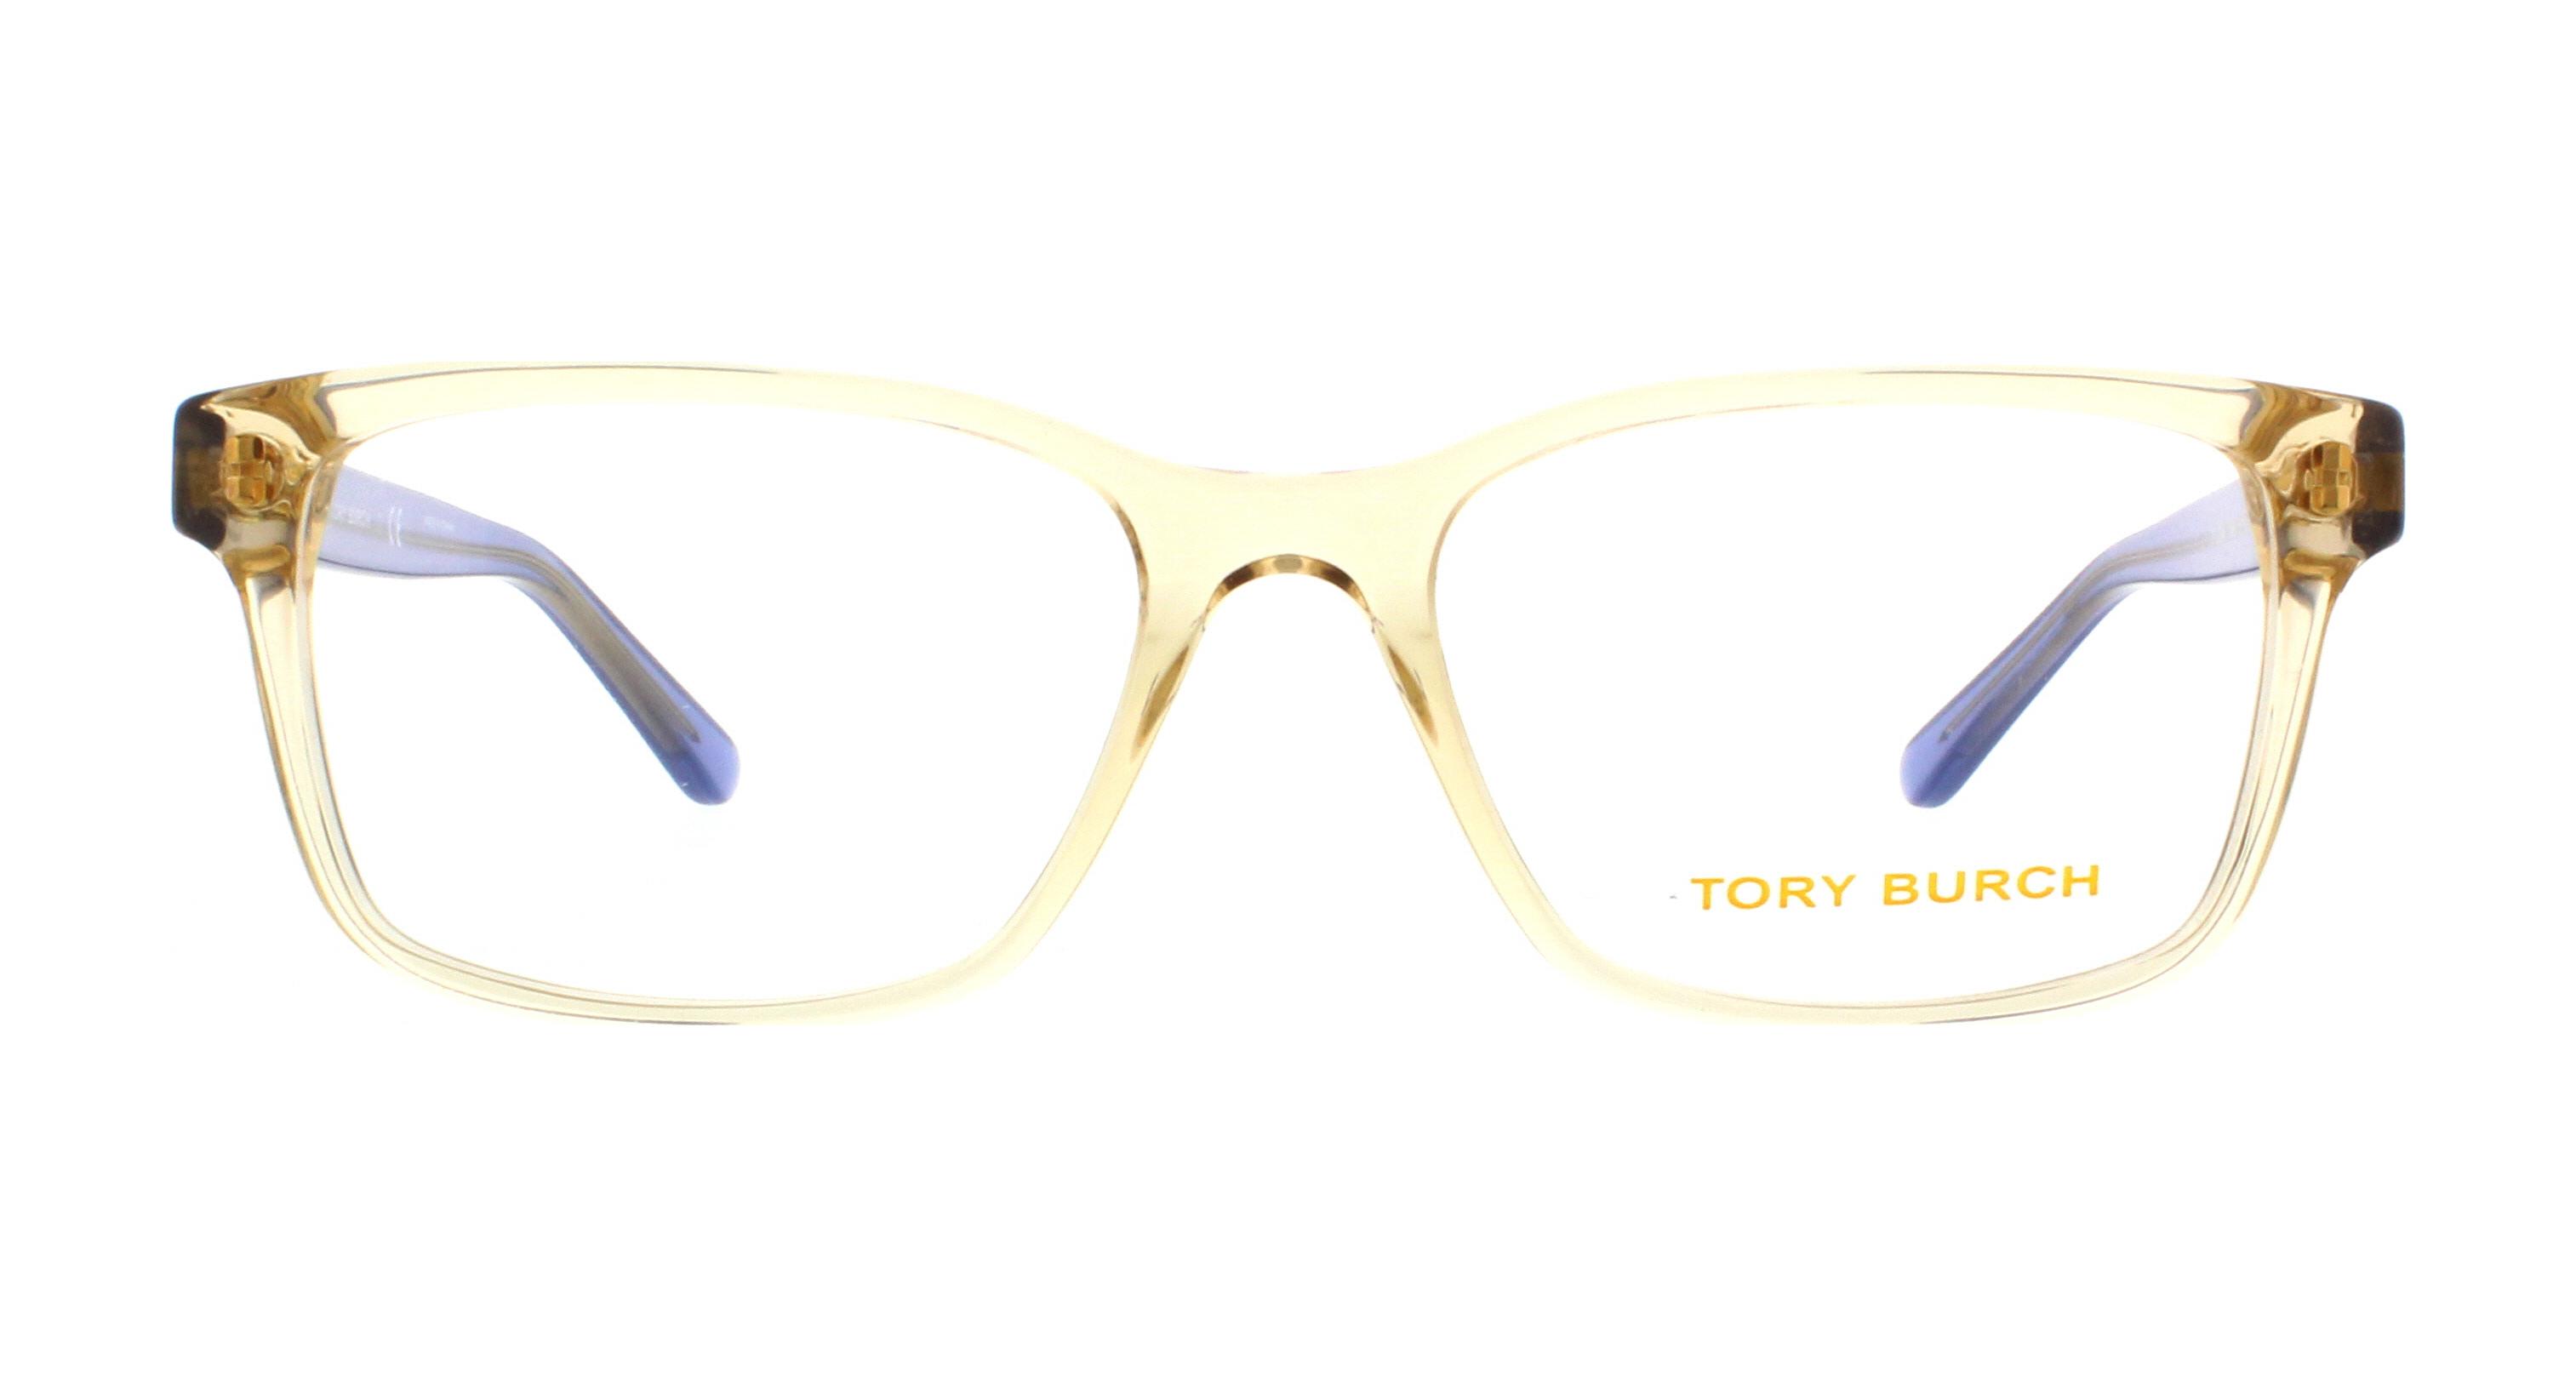 Designer Frames Outlet. Tory Burch Eyeglasses TY2064